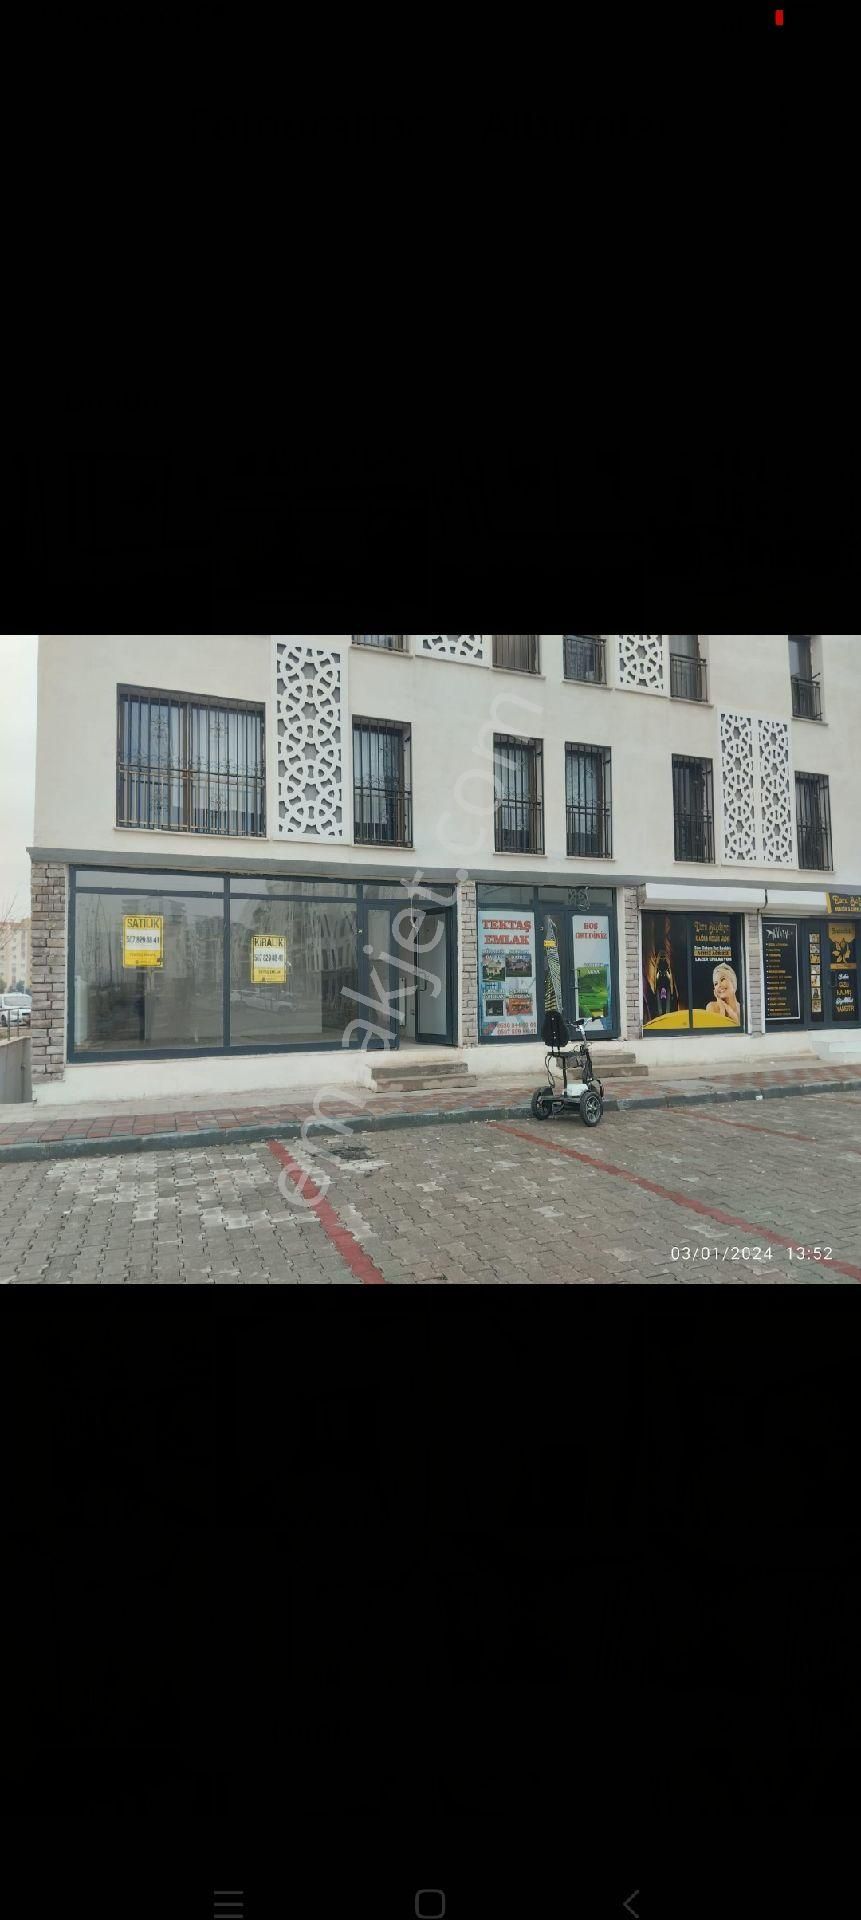 Diyarbakır Kayapınar Satılık Dükkan & Mağaza araştırma hastanesi karşısında satılık 50 metre dükkan araba ve daire takasa açık 